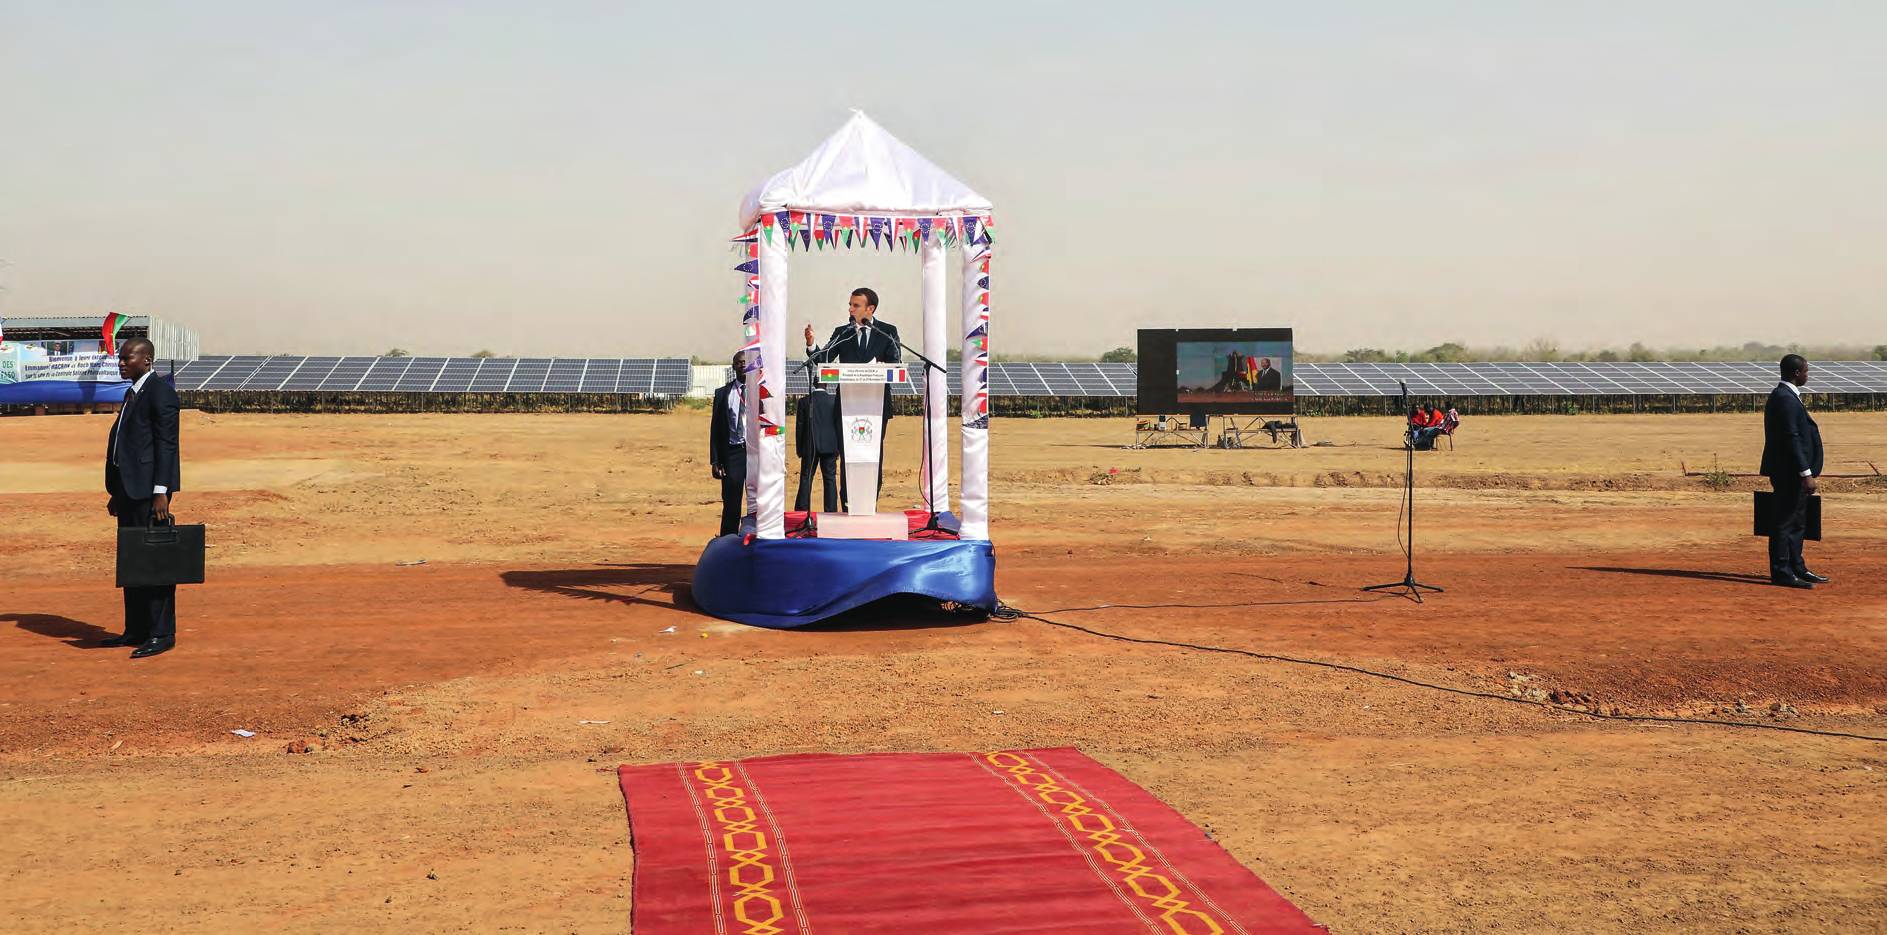 Le président français Emmanuel Macron lors de l’inauguration d’une centrale solaire à Zagtouli, près de Ouagadougou, au Burkina Faso, le 29 novembre 2017. LUDOVIC MARIN/POOL/REUTERS